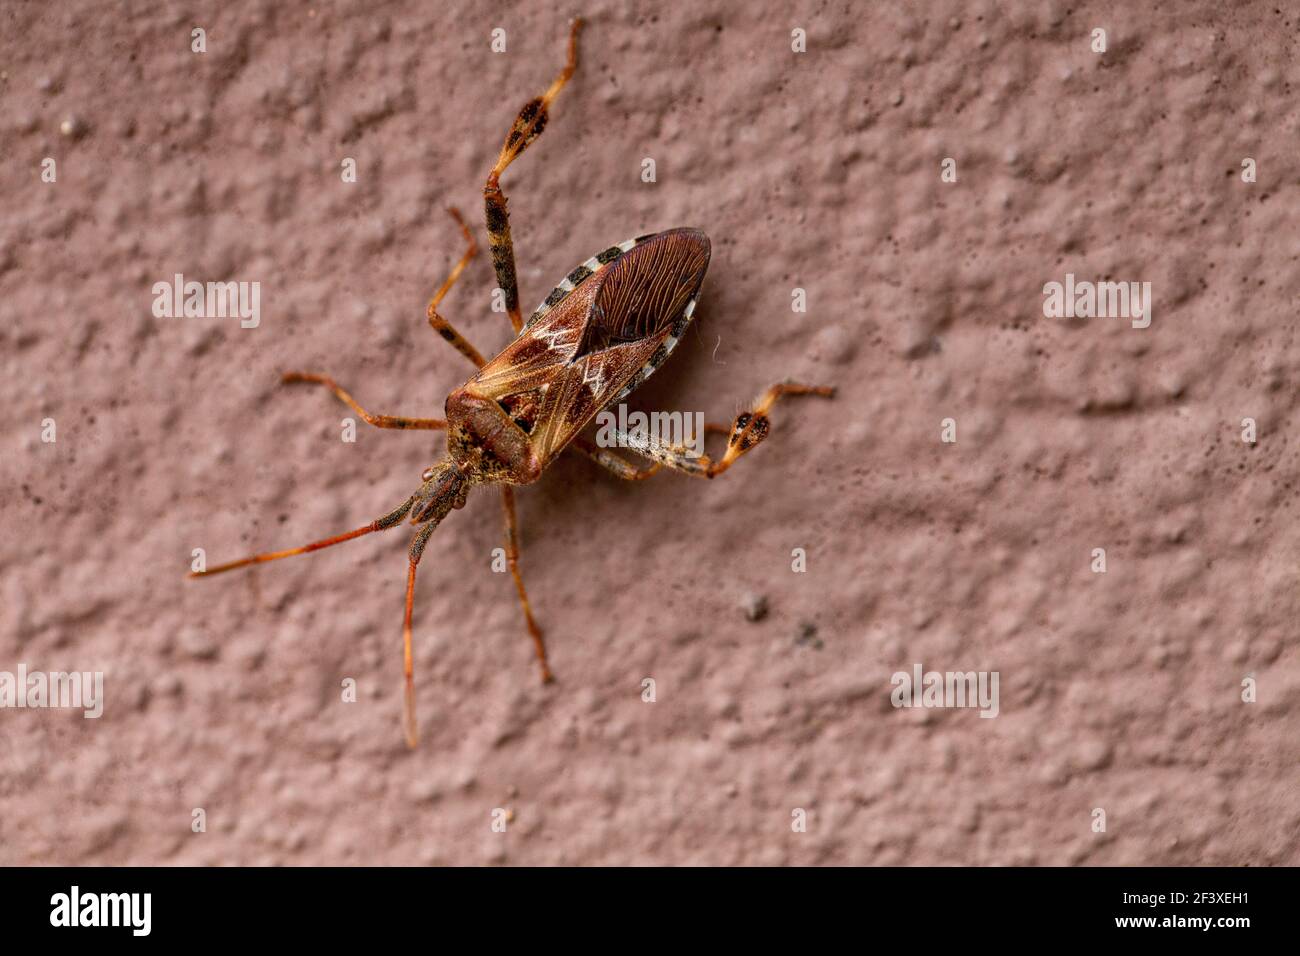 Insecto americano de pino Leptoglossa occidentalis escalada en una pared marrón Foto de stock